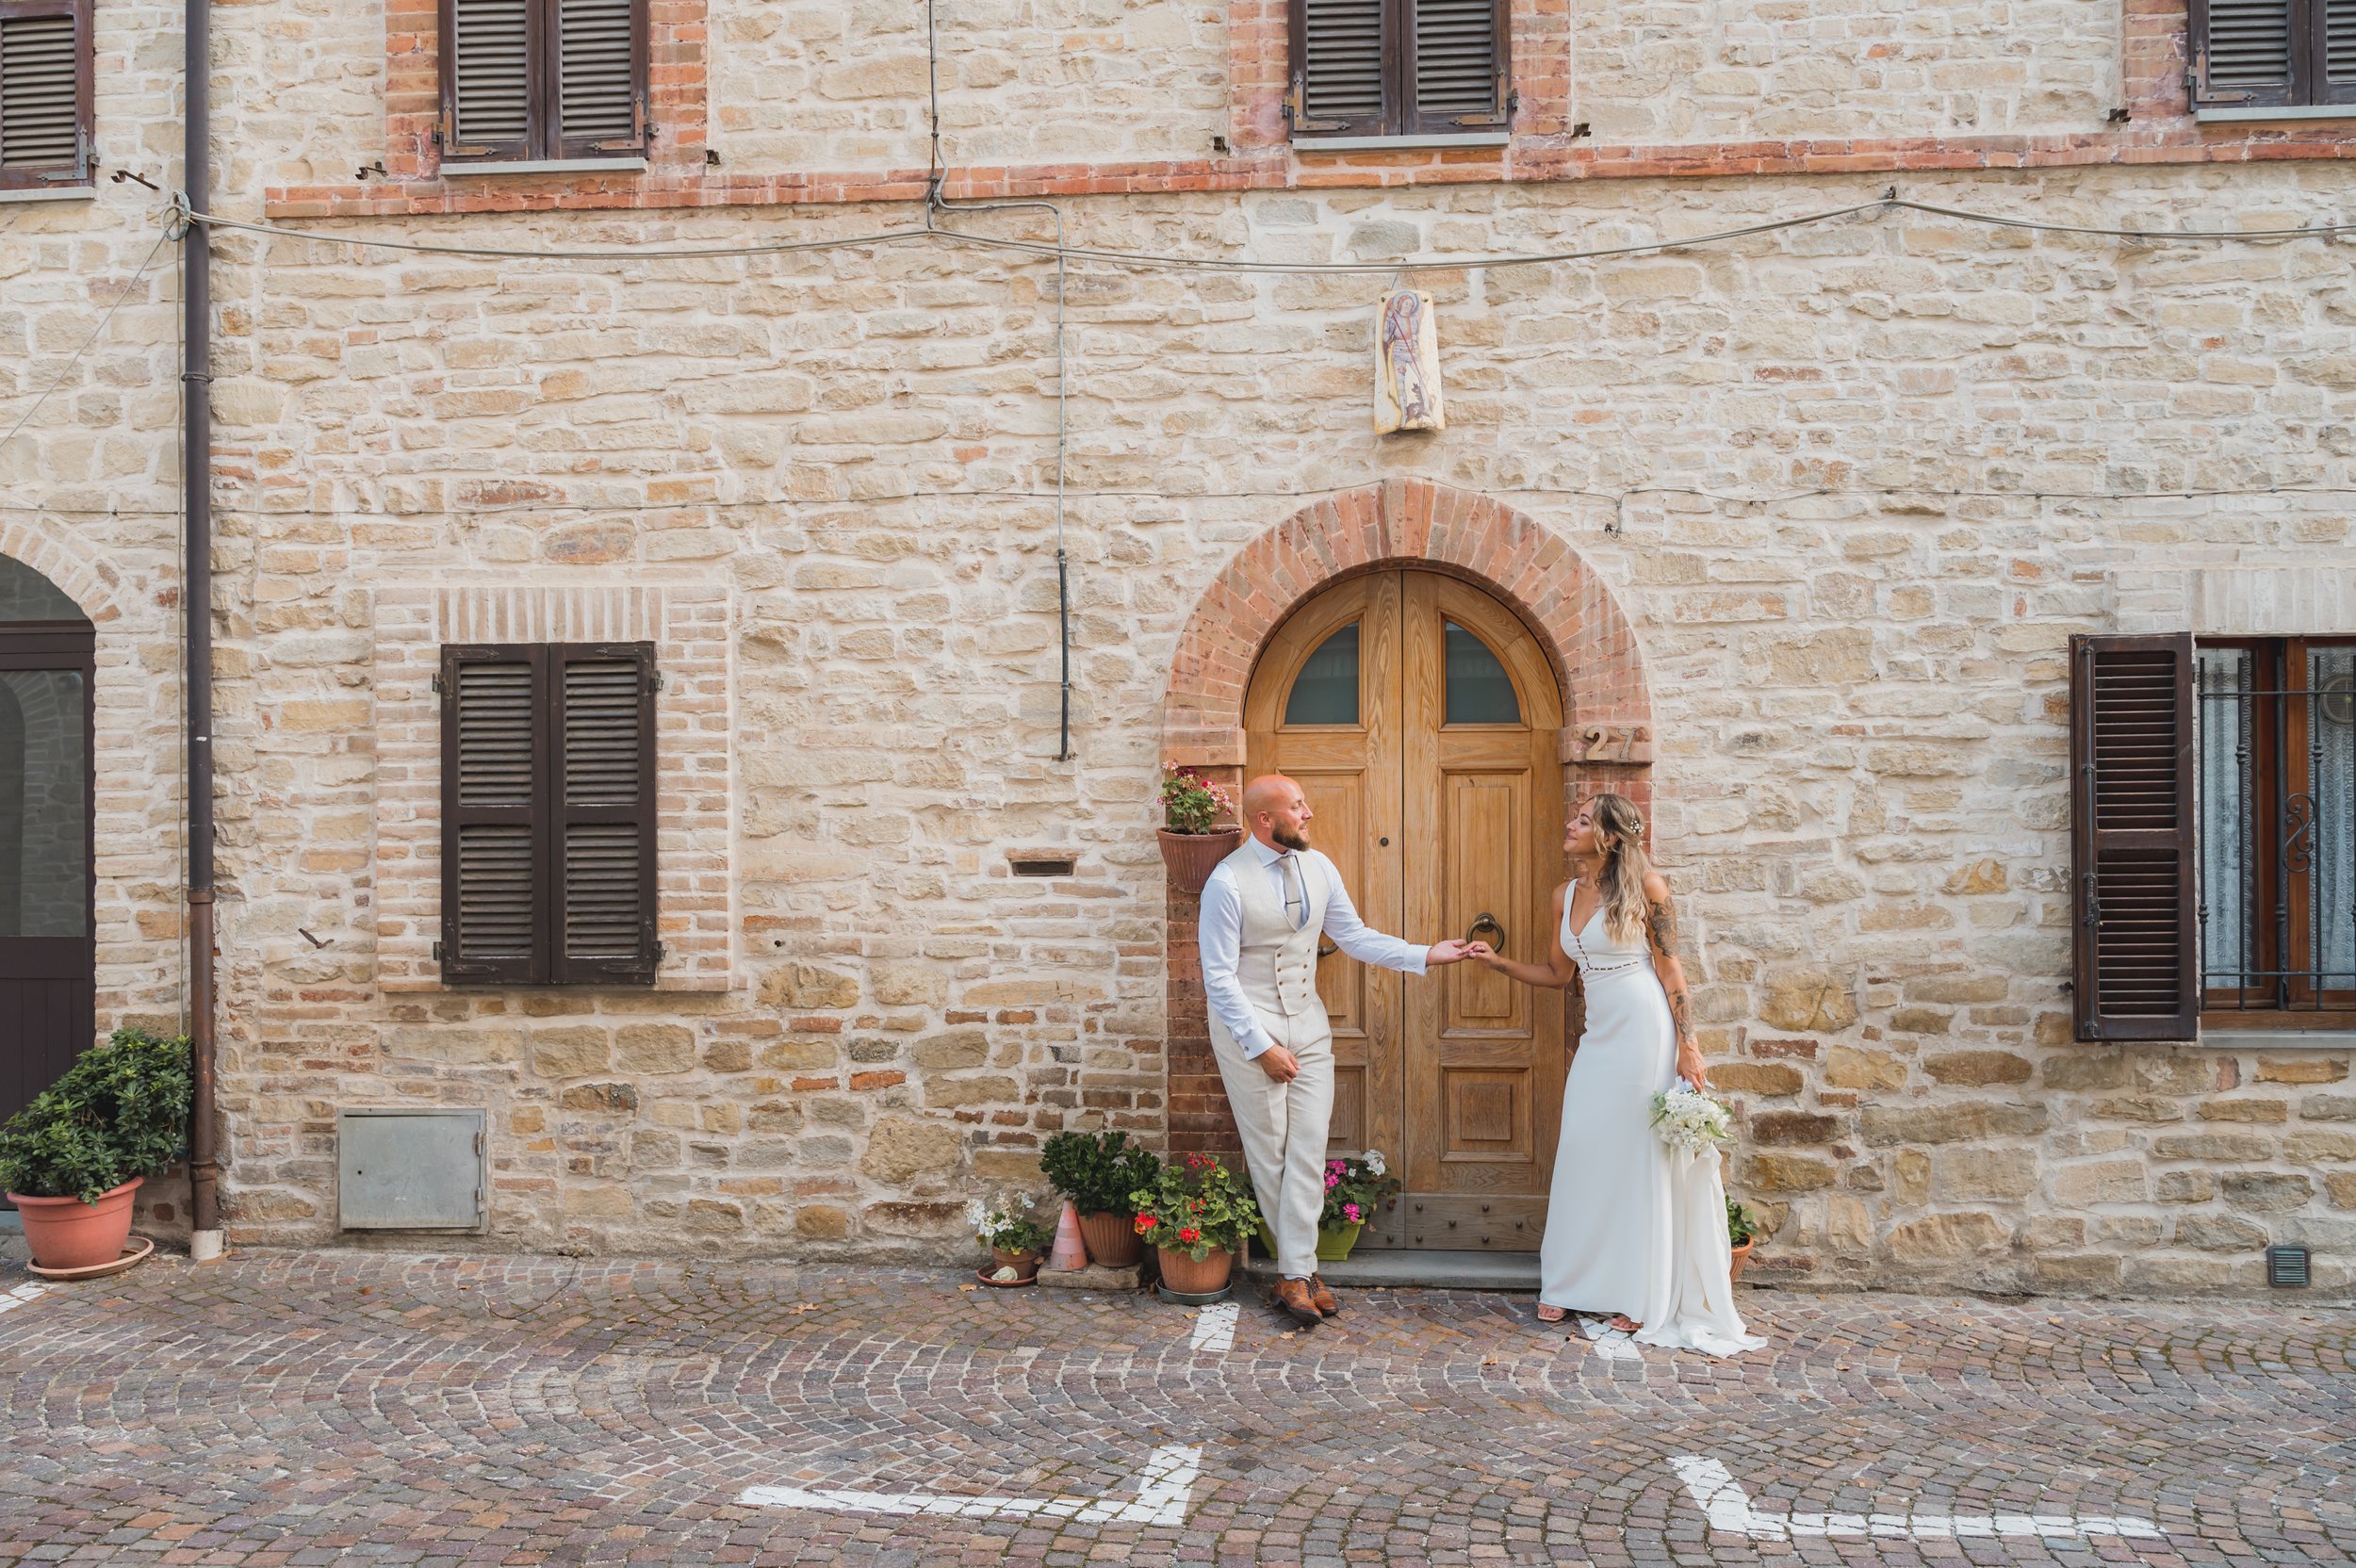 Wedding-Italy-photographer-tuscany-25